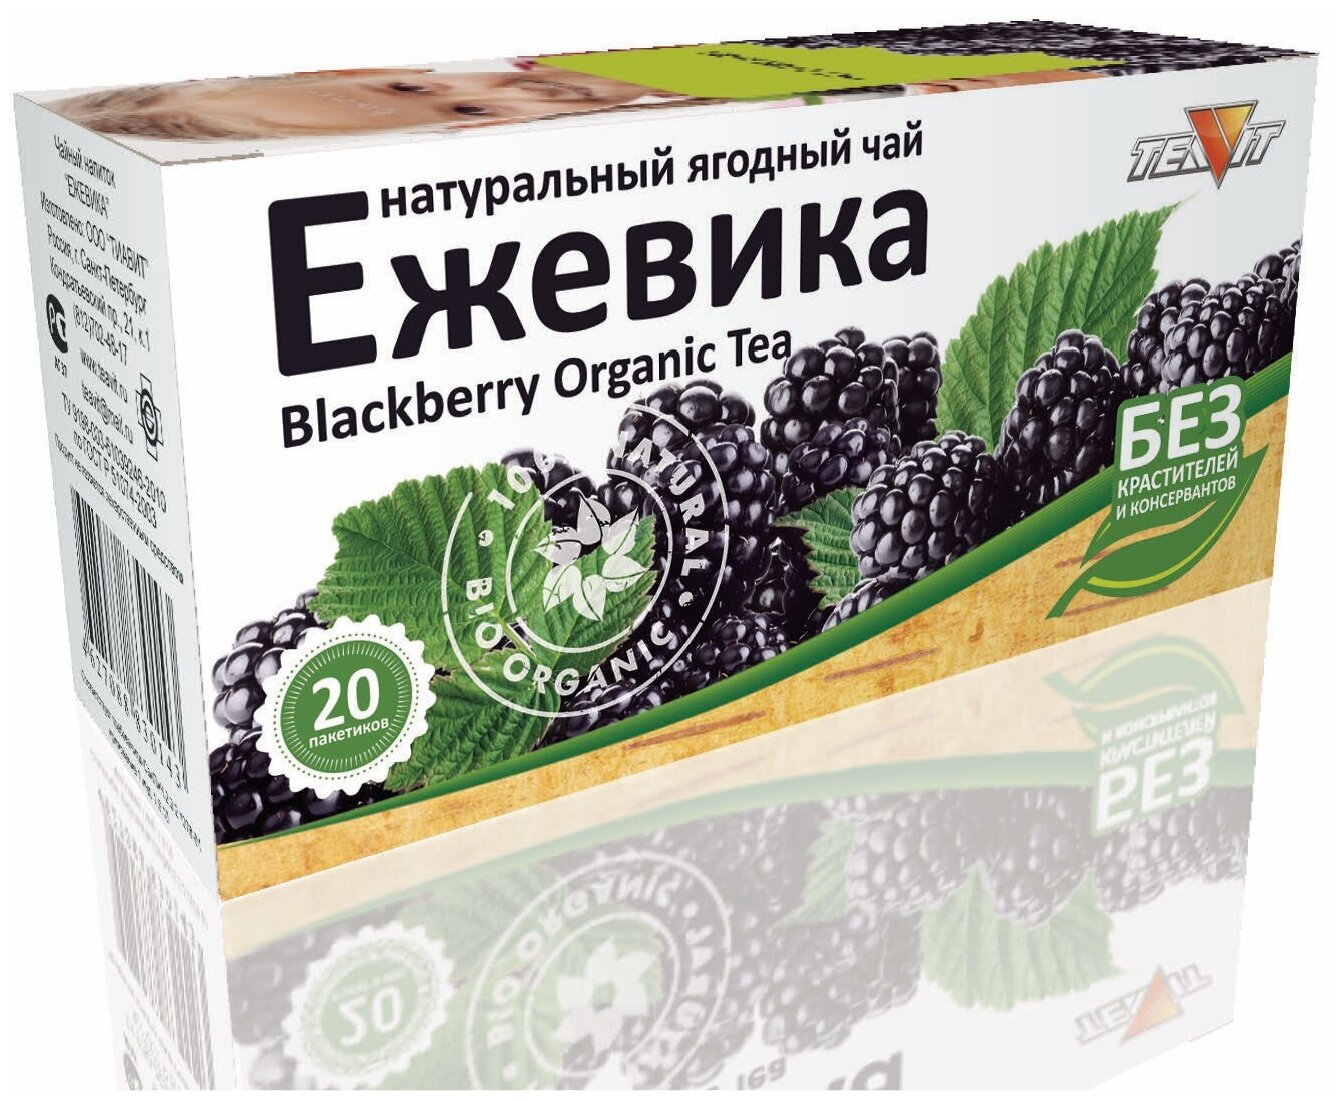 Натуральный ягодный чай TEAVIT Ежевичный. 20 пакетиков